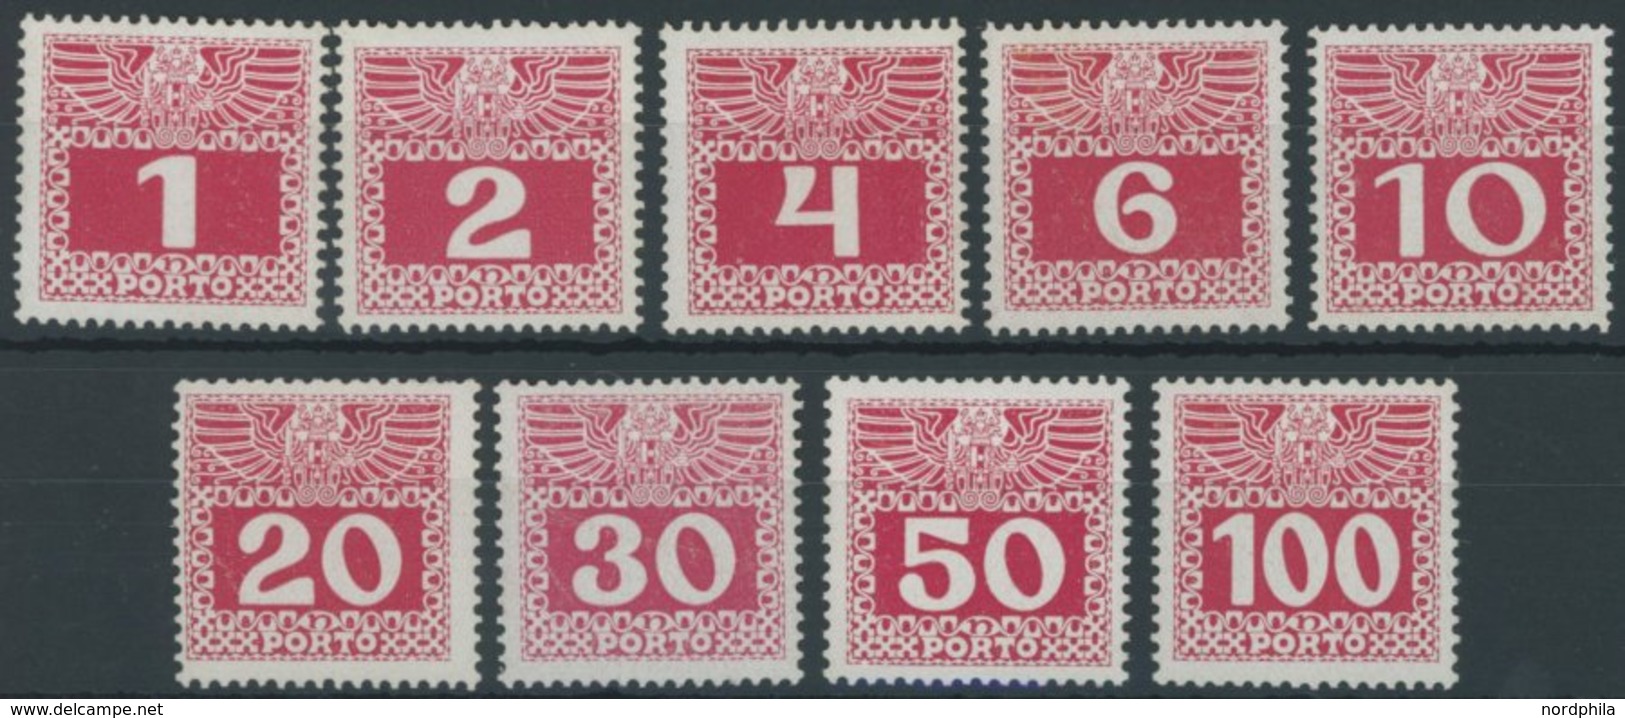 PORTOMARKEN P 34-44x **, 1908, 1 - 100 H. Lebhaftlilarot, Kreidepapier, Postfrischer Prachtsatz (9 Werte), Mi. 380.- - Postage Due